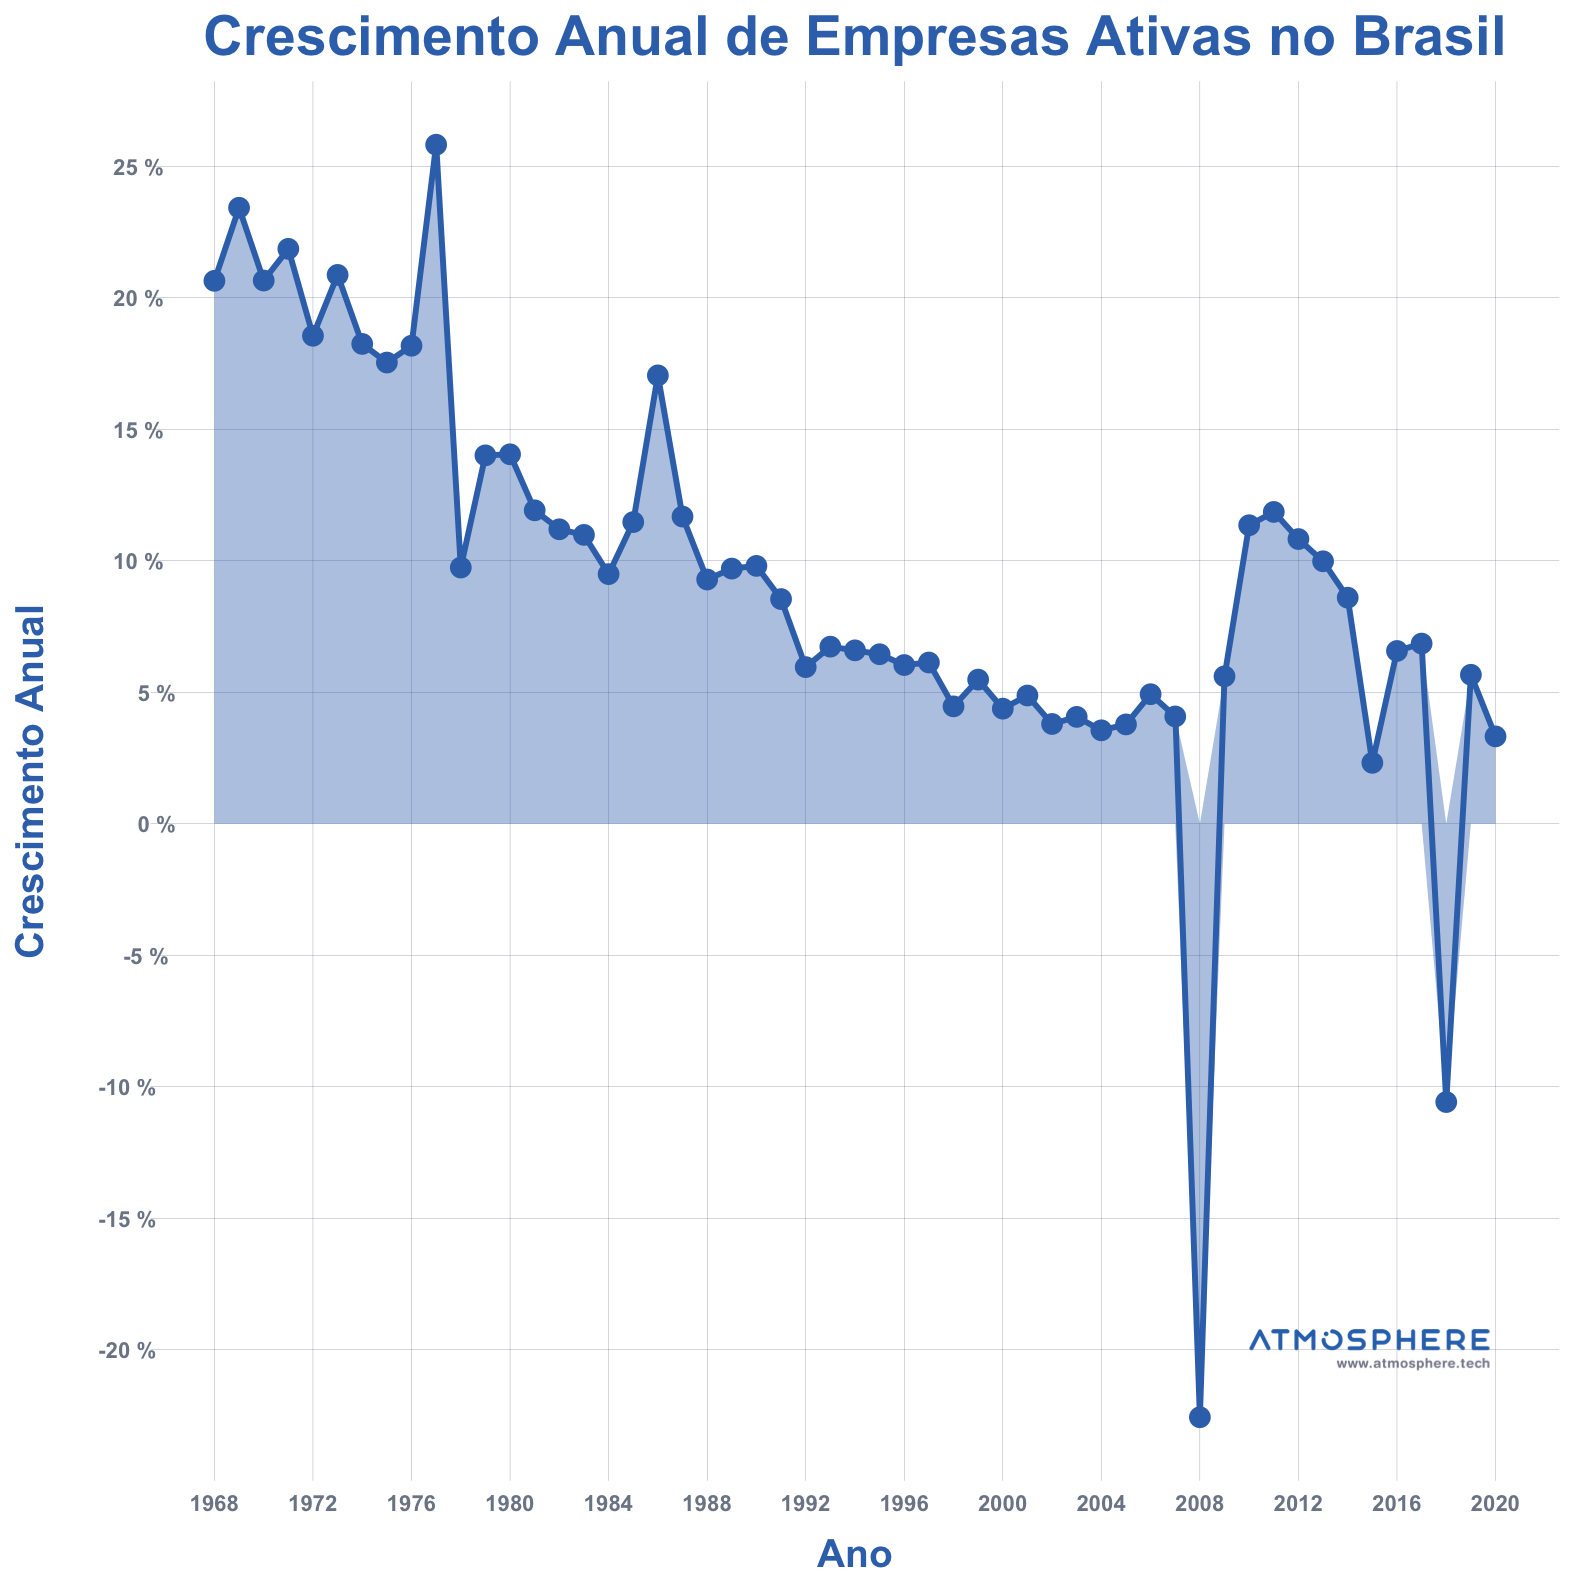 Atmosphere Crescimento Anual de Empresas Ativas no Brasil